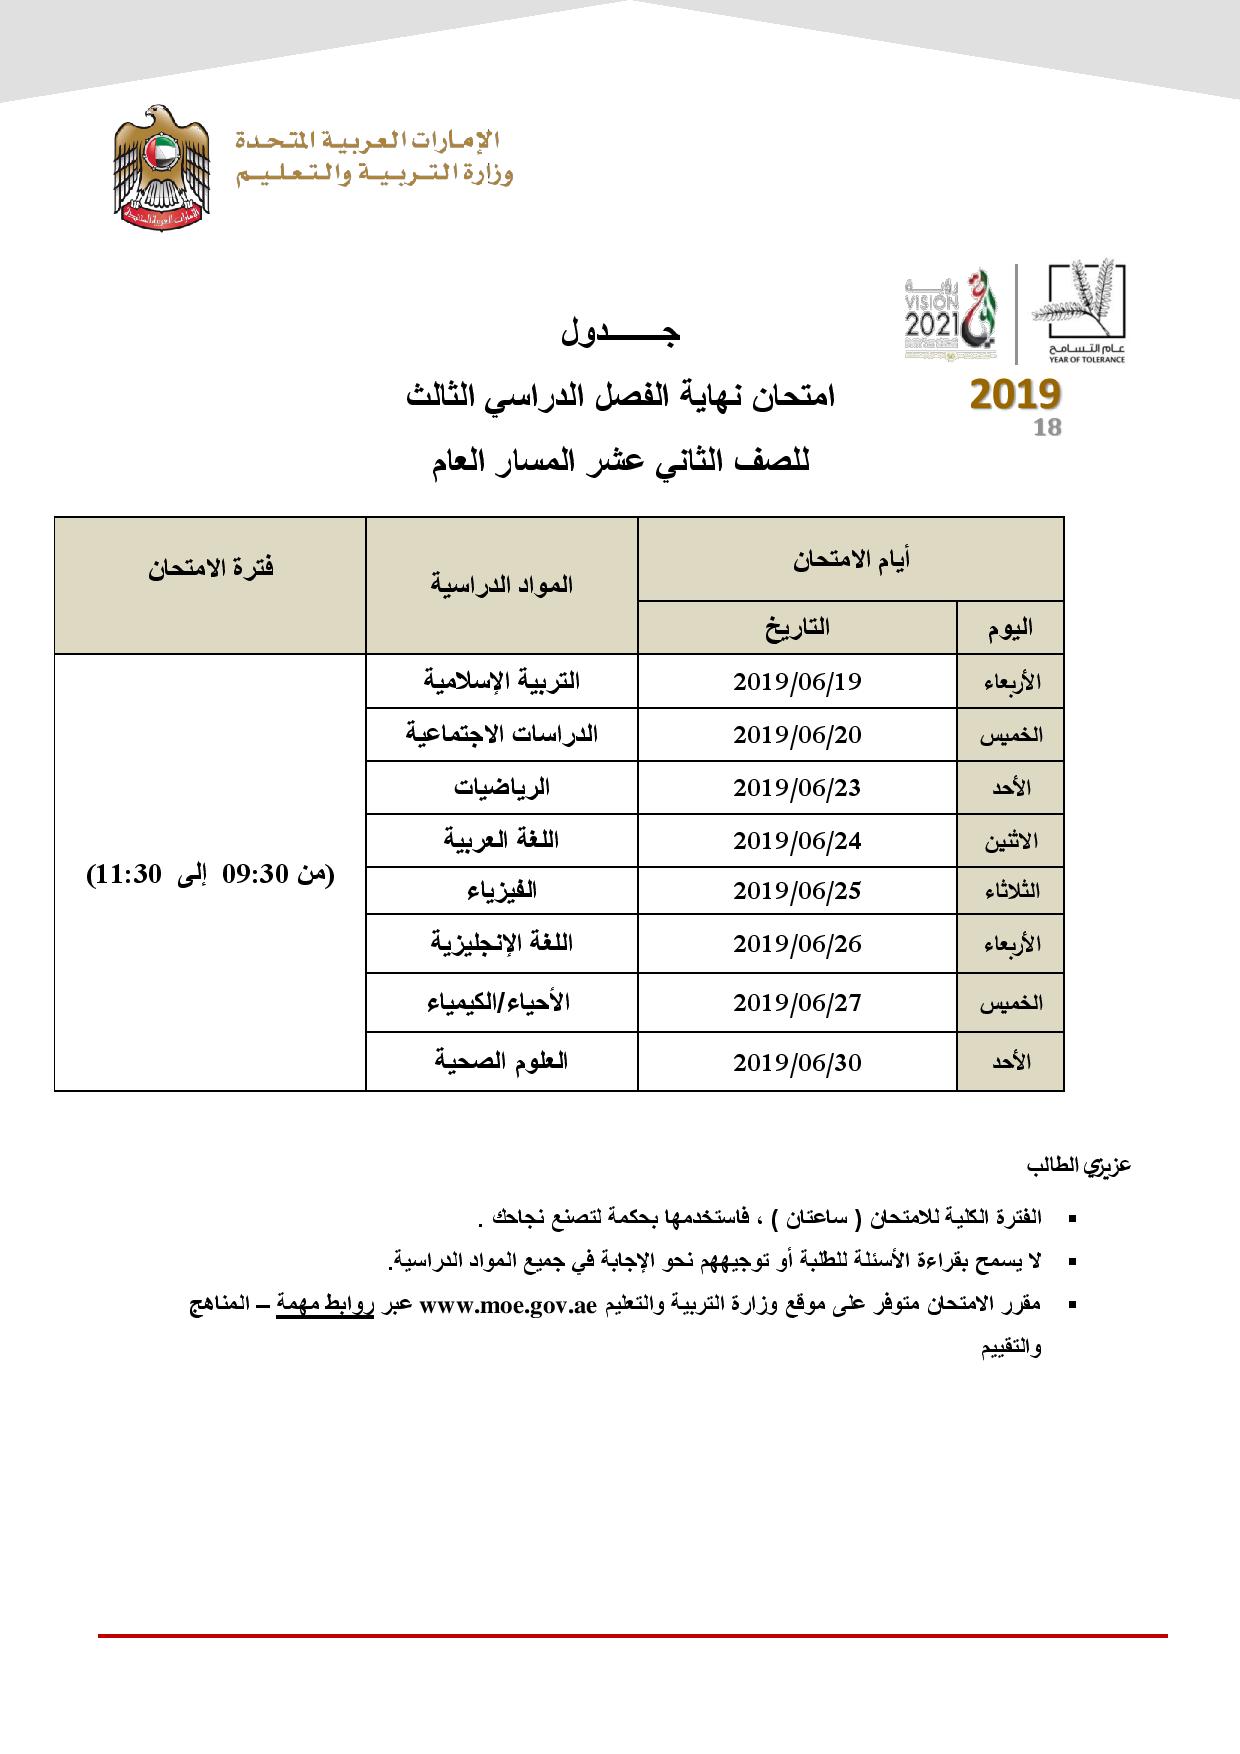 صورة جدول امتحانات الفصل الثالث 2019 لجميع الصفوف بالامارات